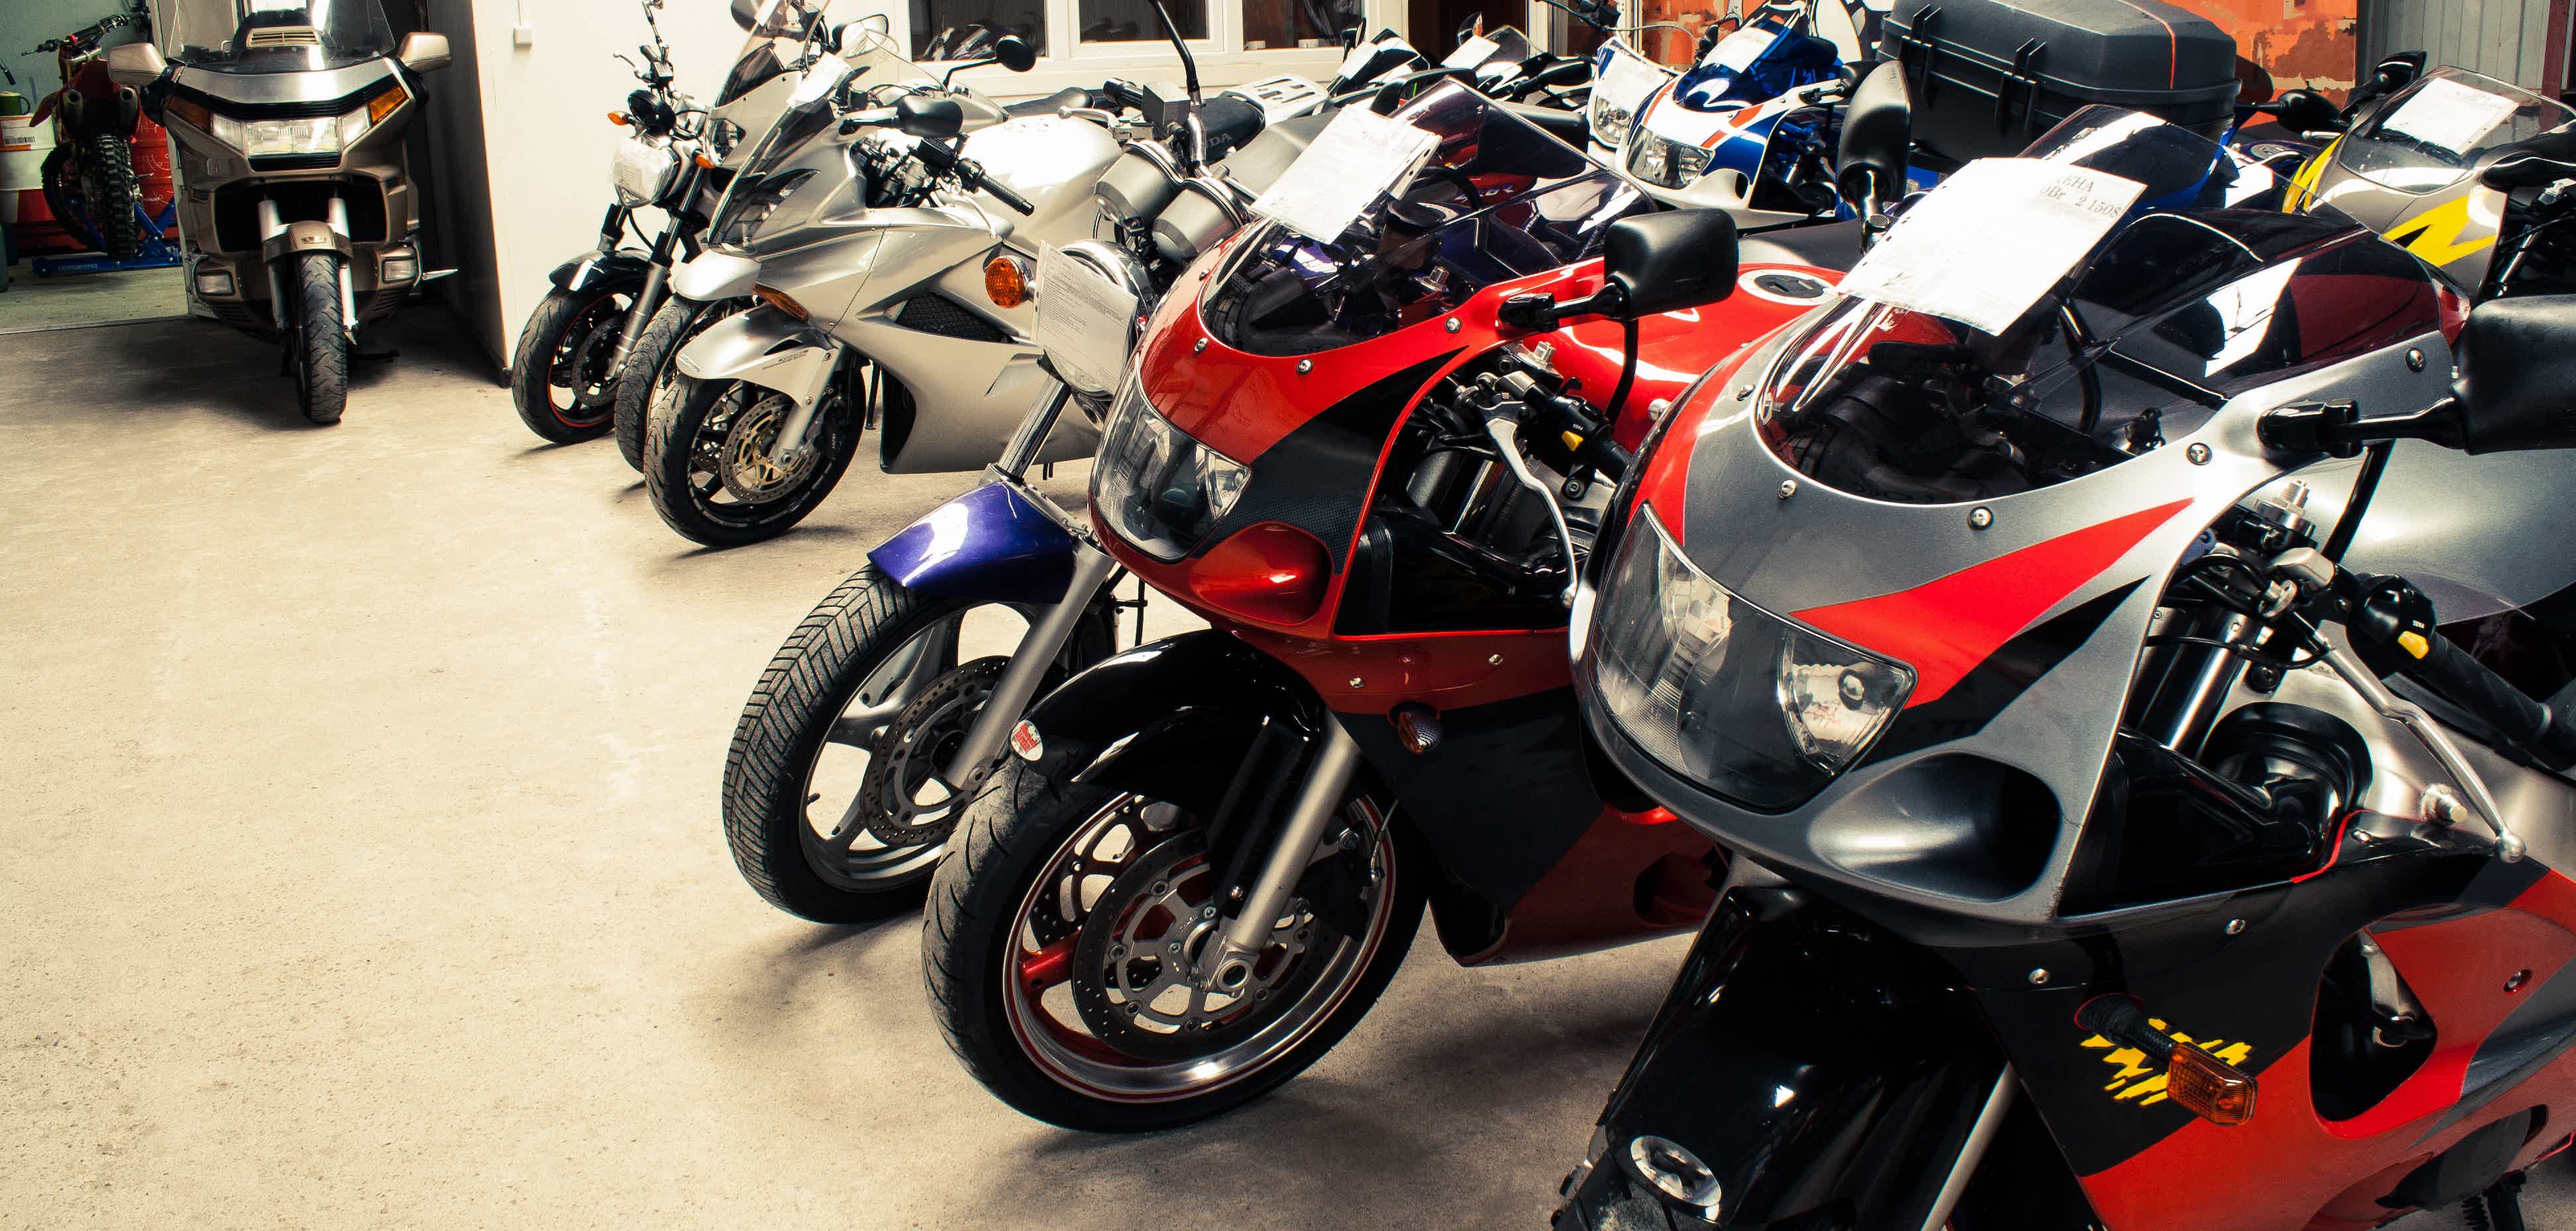 Qual vale mais a pena: alugar ou comprar uma moto? Descubra. Fonte: AdobeStock.